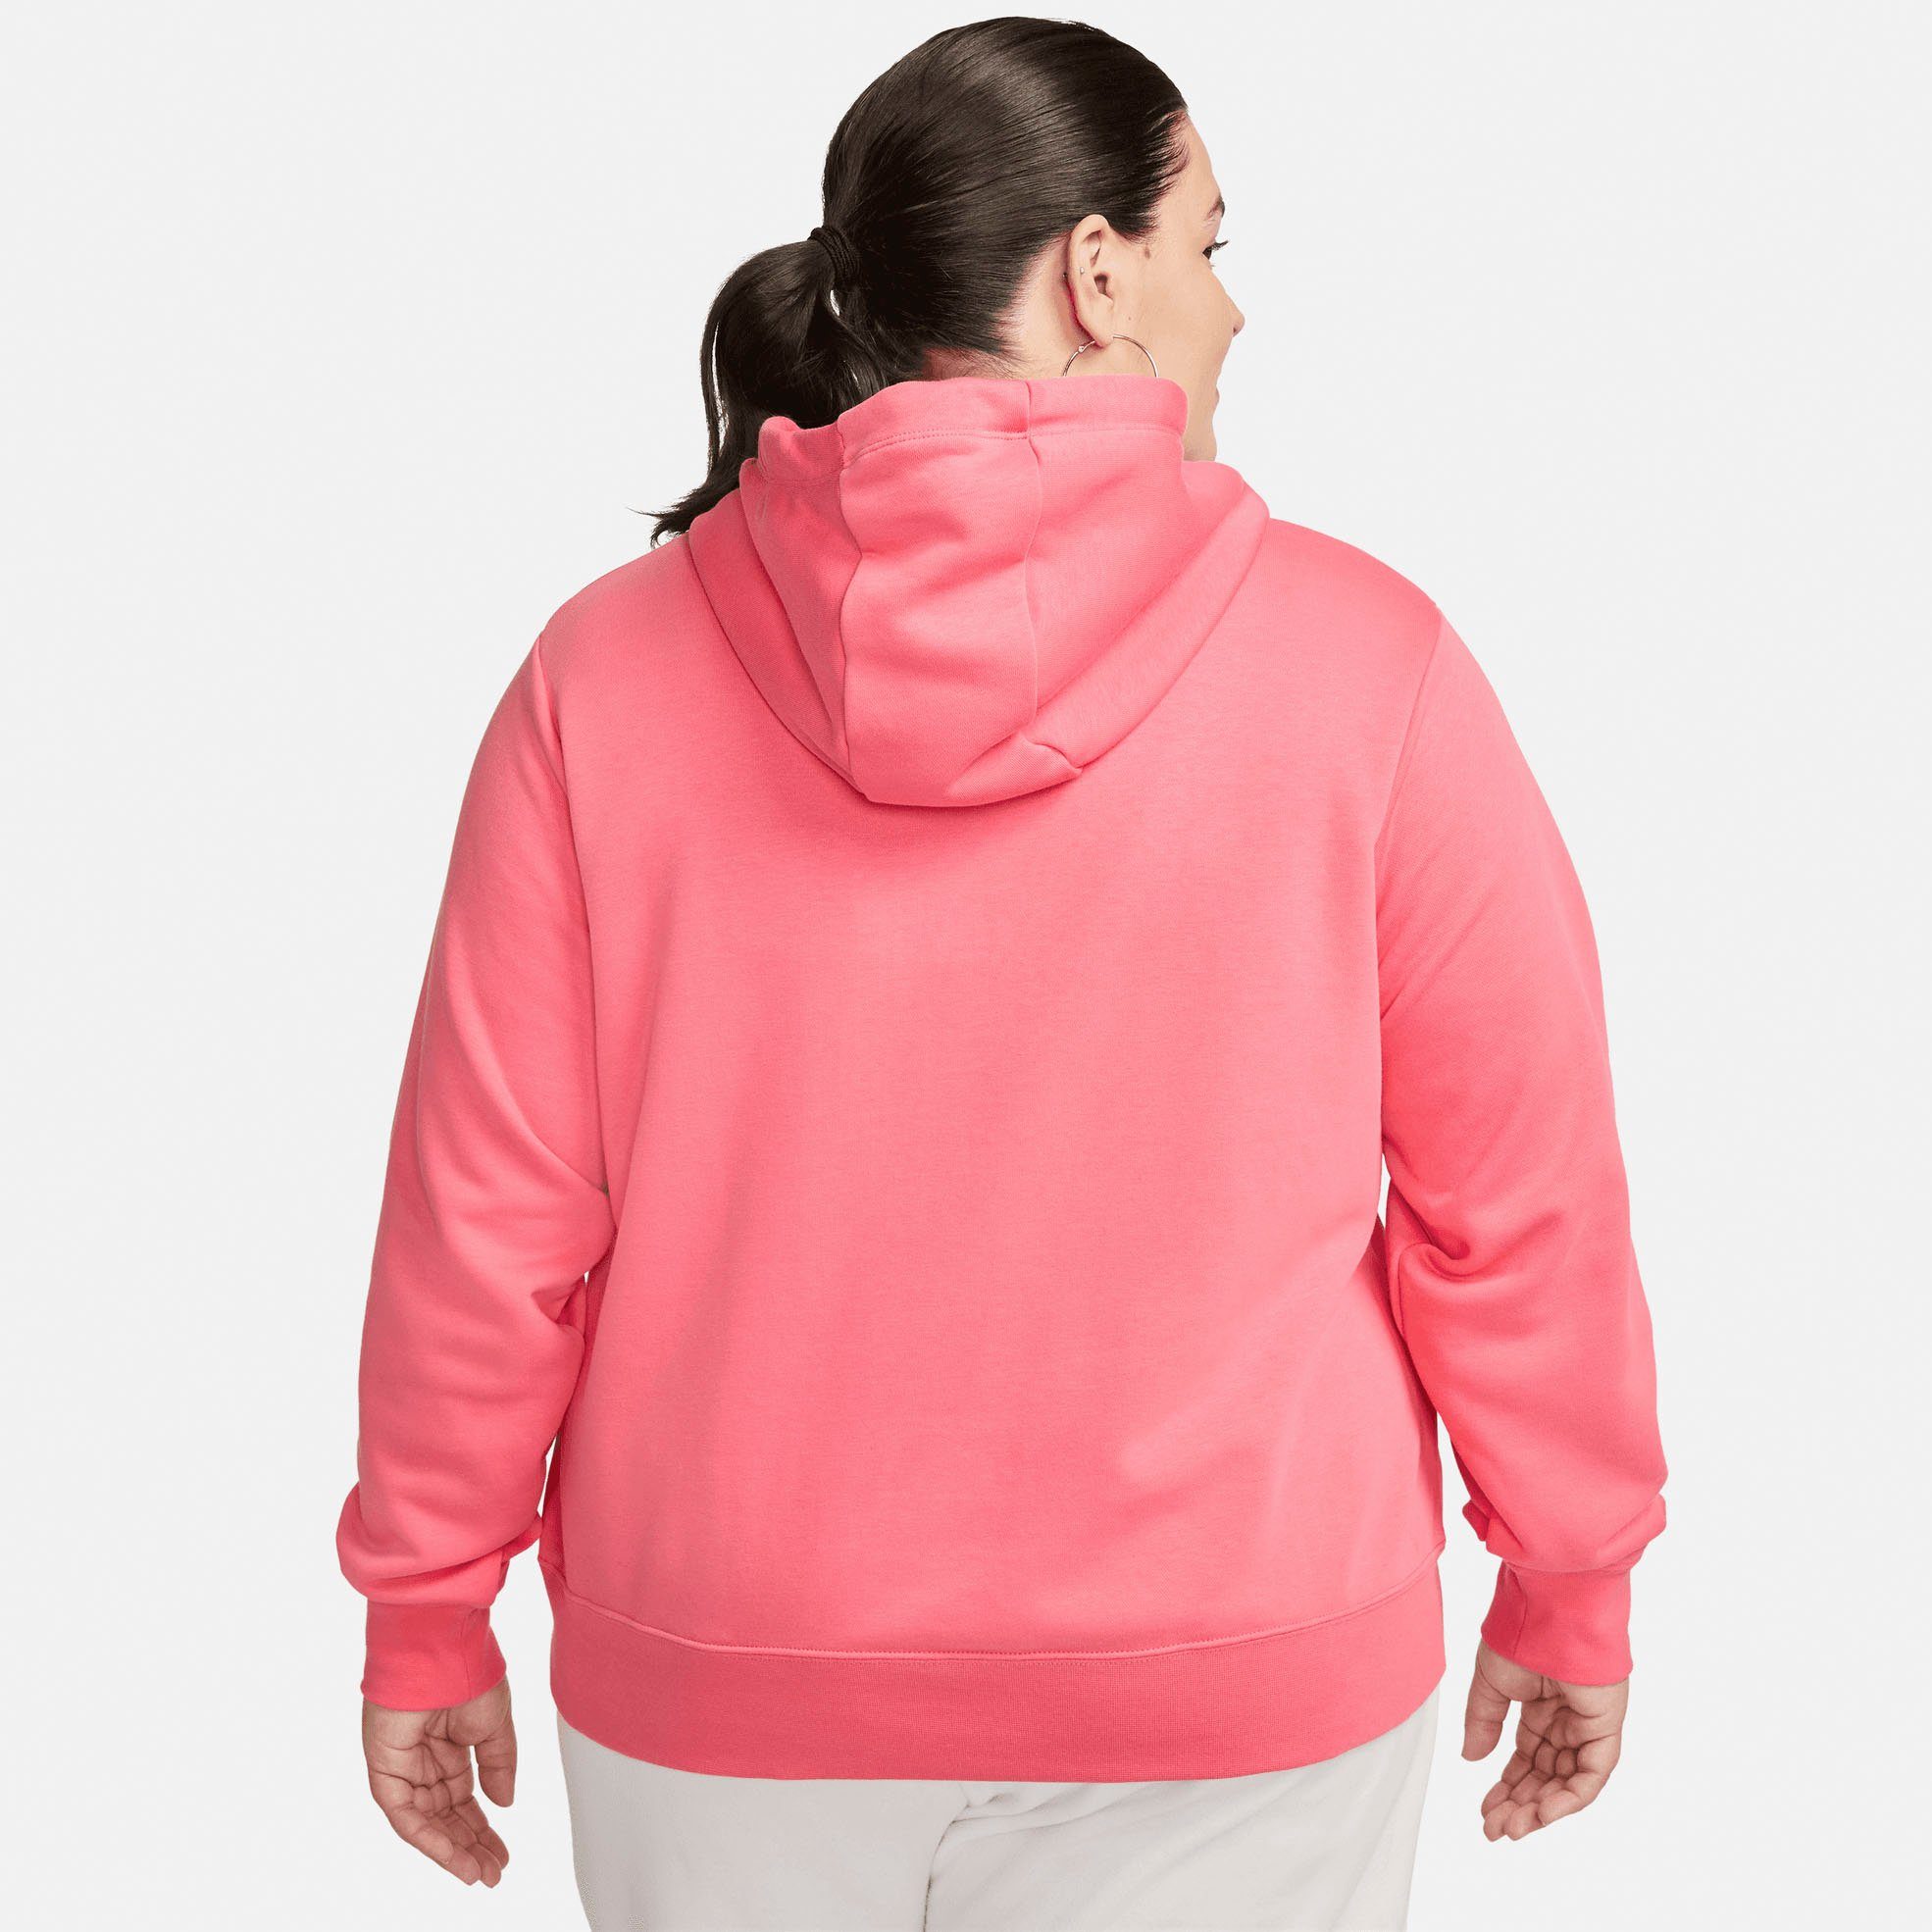 Fleece Pullover Club Sportswear Women's Kapuzensweatshirt Size) (Plus Nike orange Hoodie